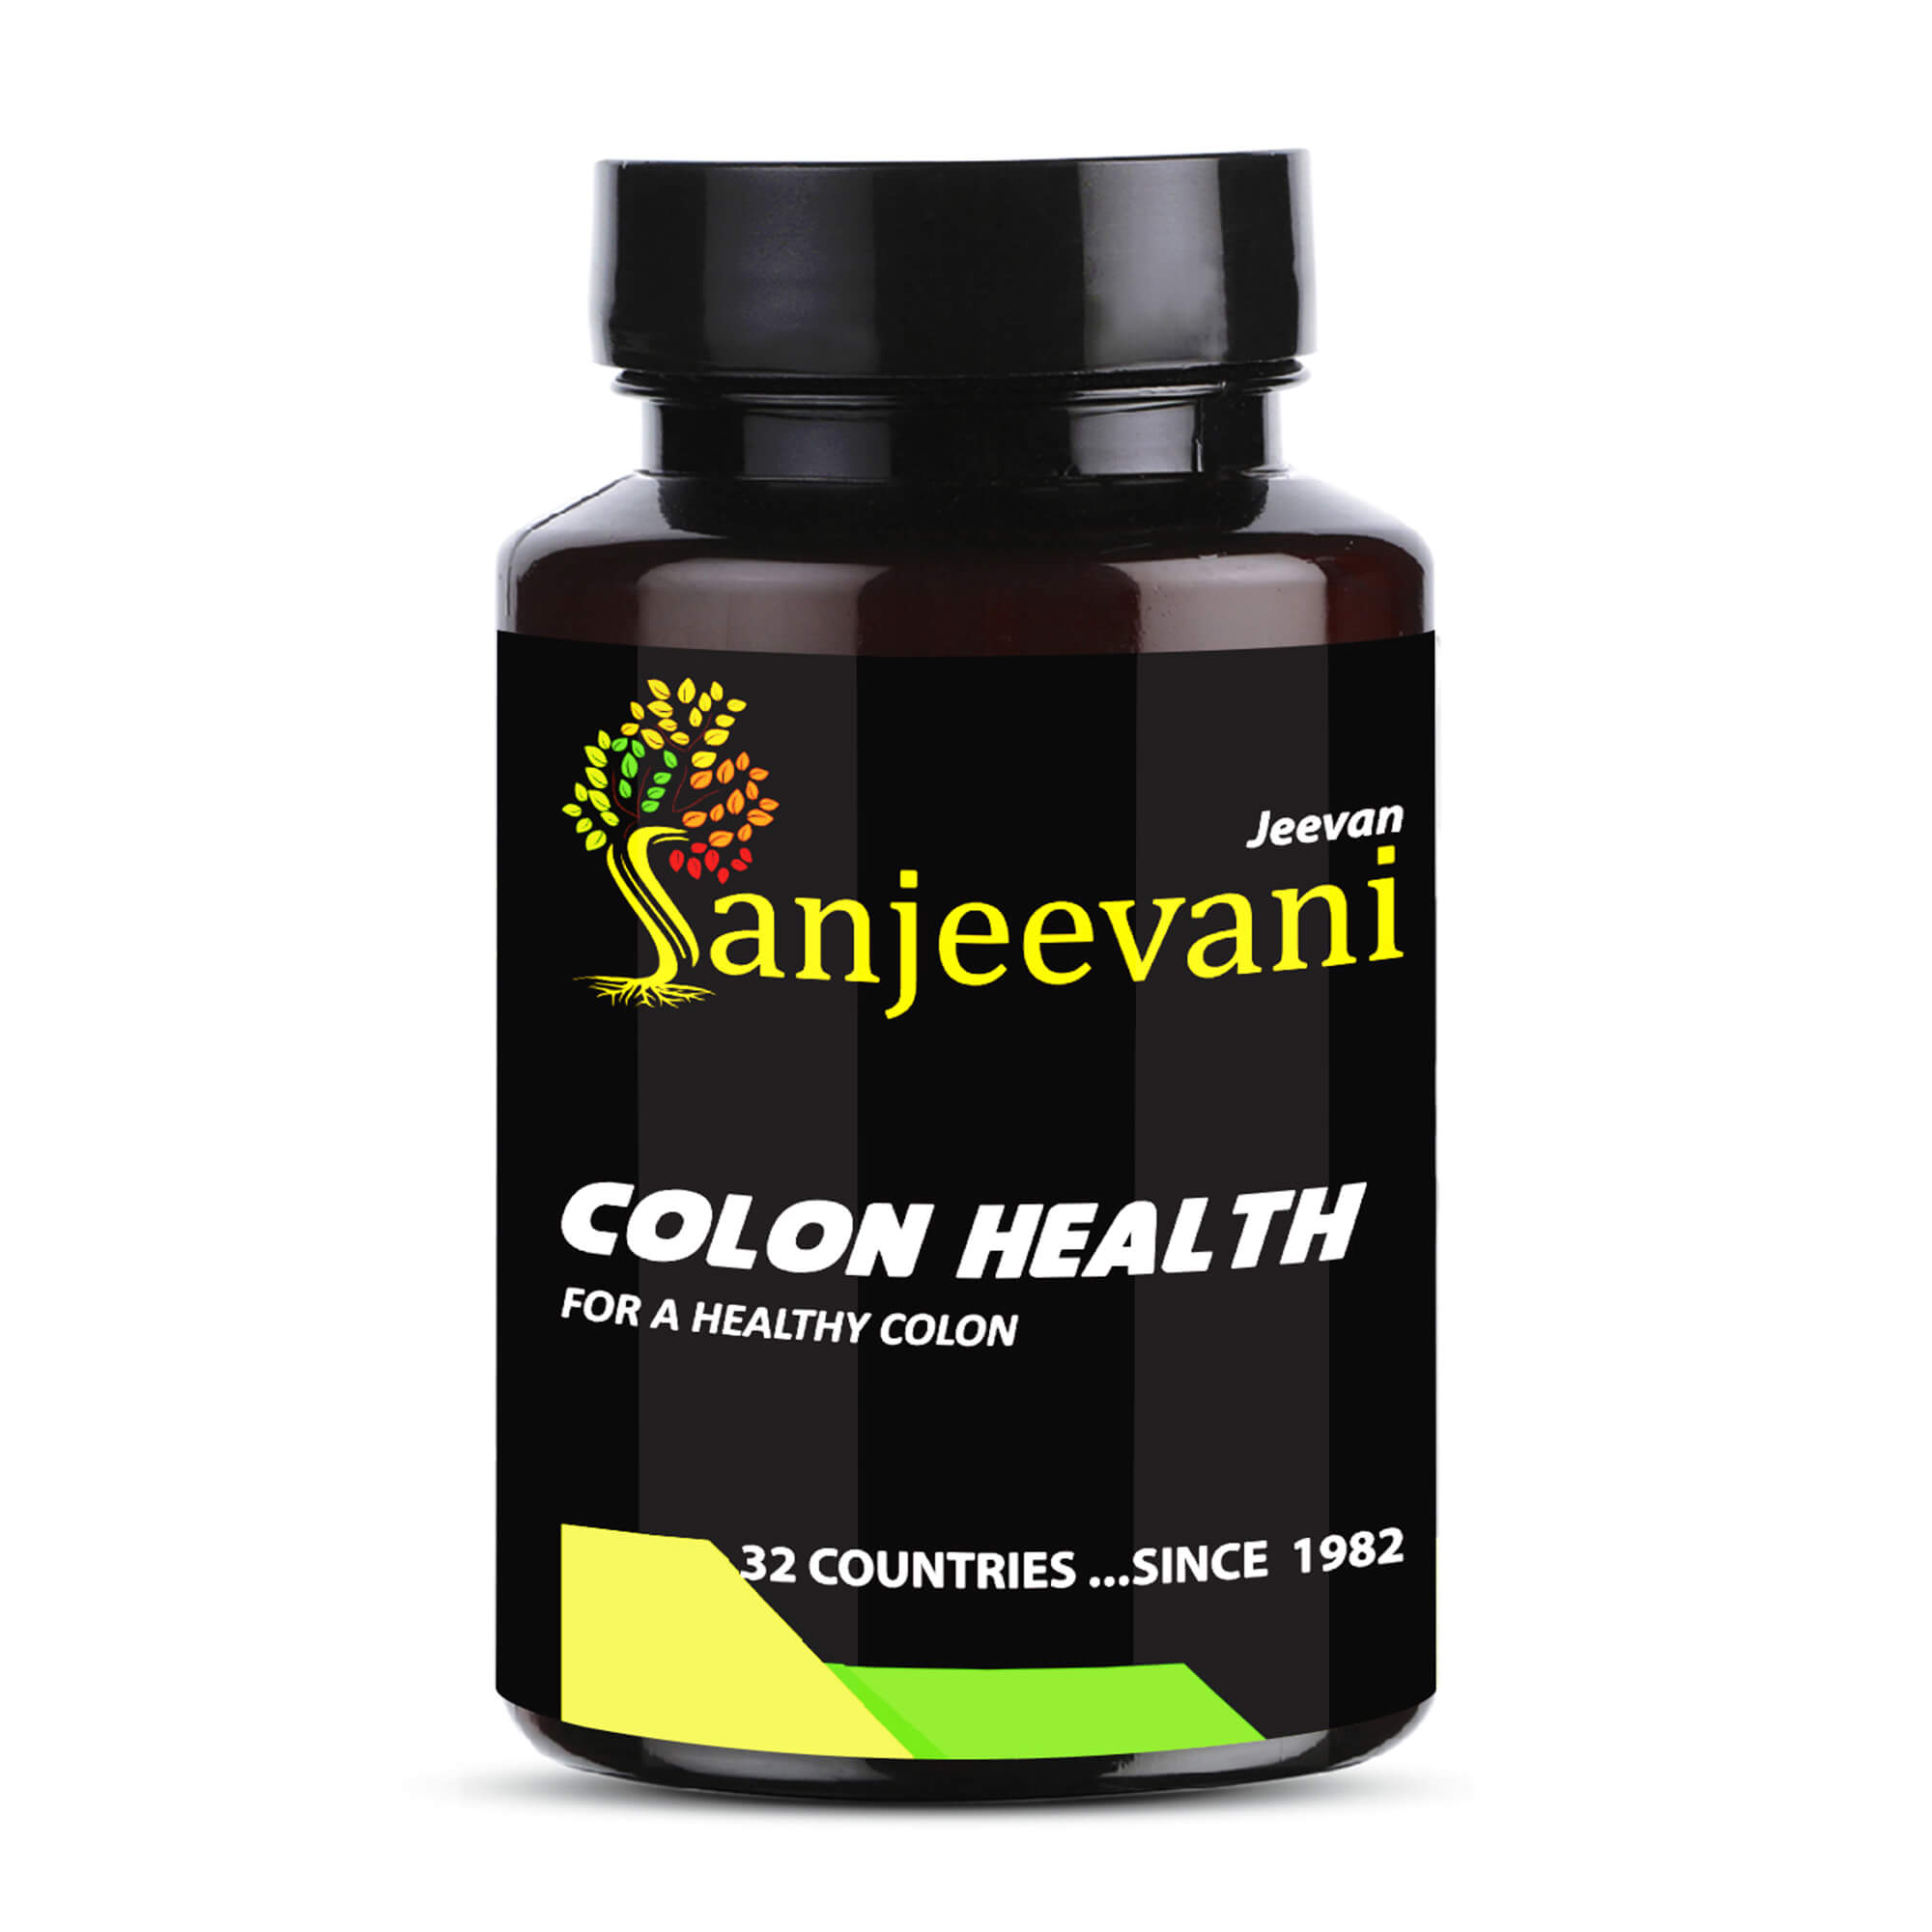 Jeevan Sanjeevani Colon Health Tablet